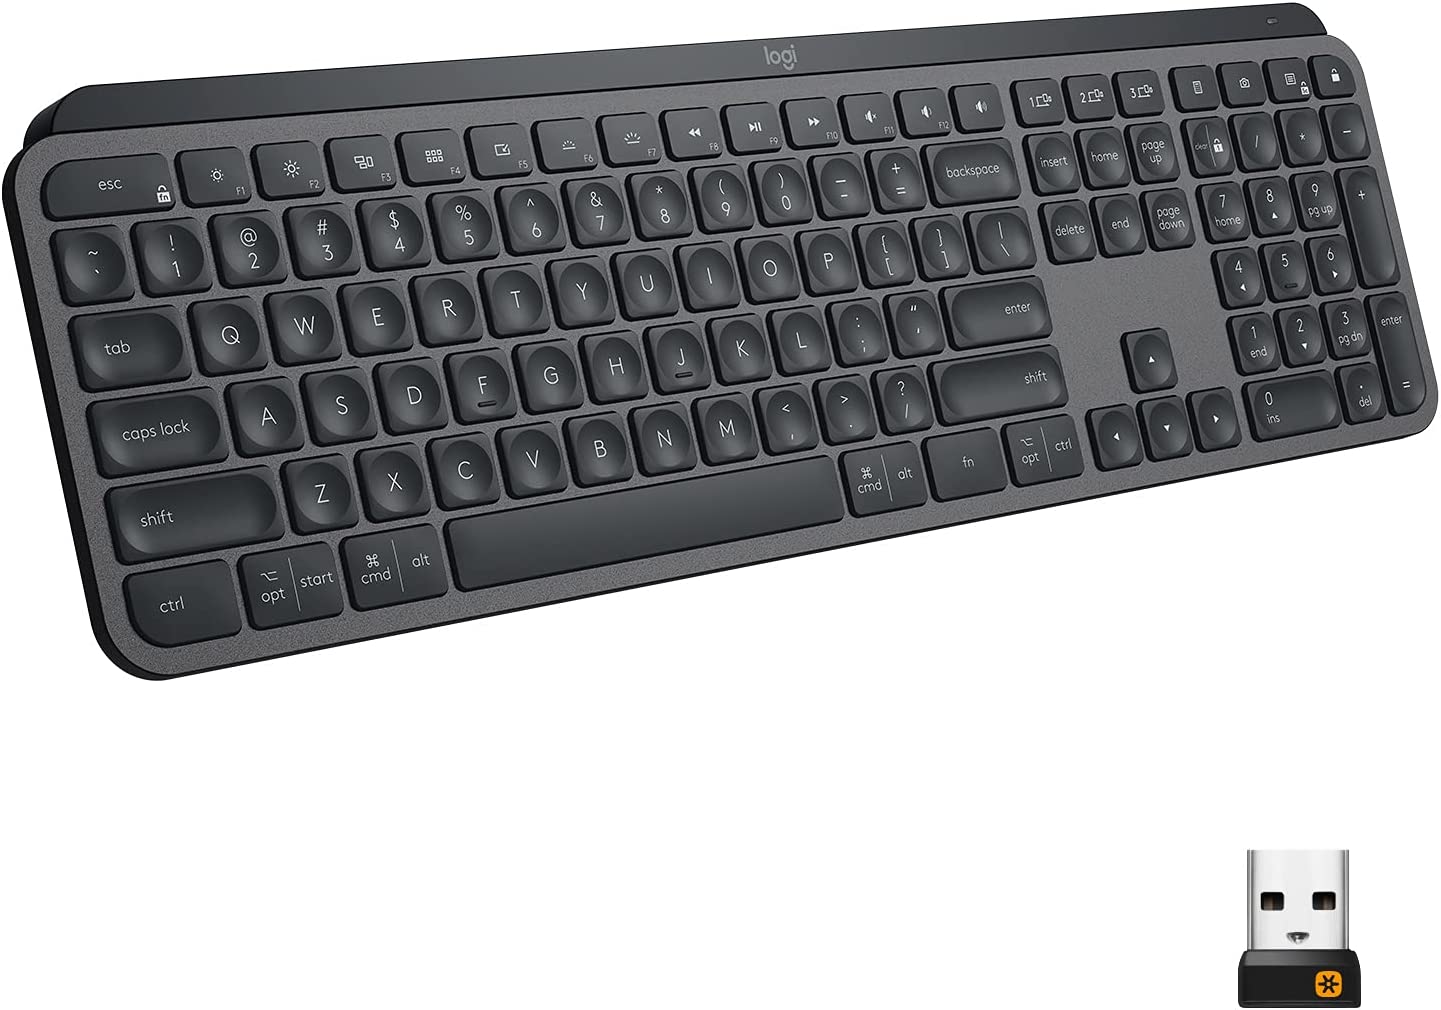 Logitech MX Full Size Rechargeable Backlit Keyboard